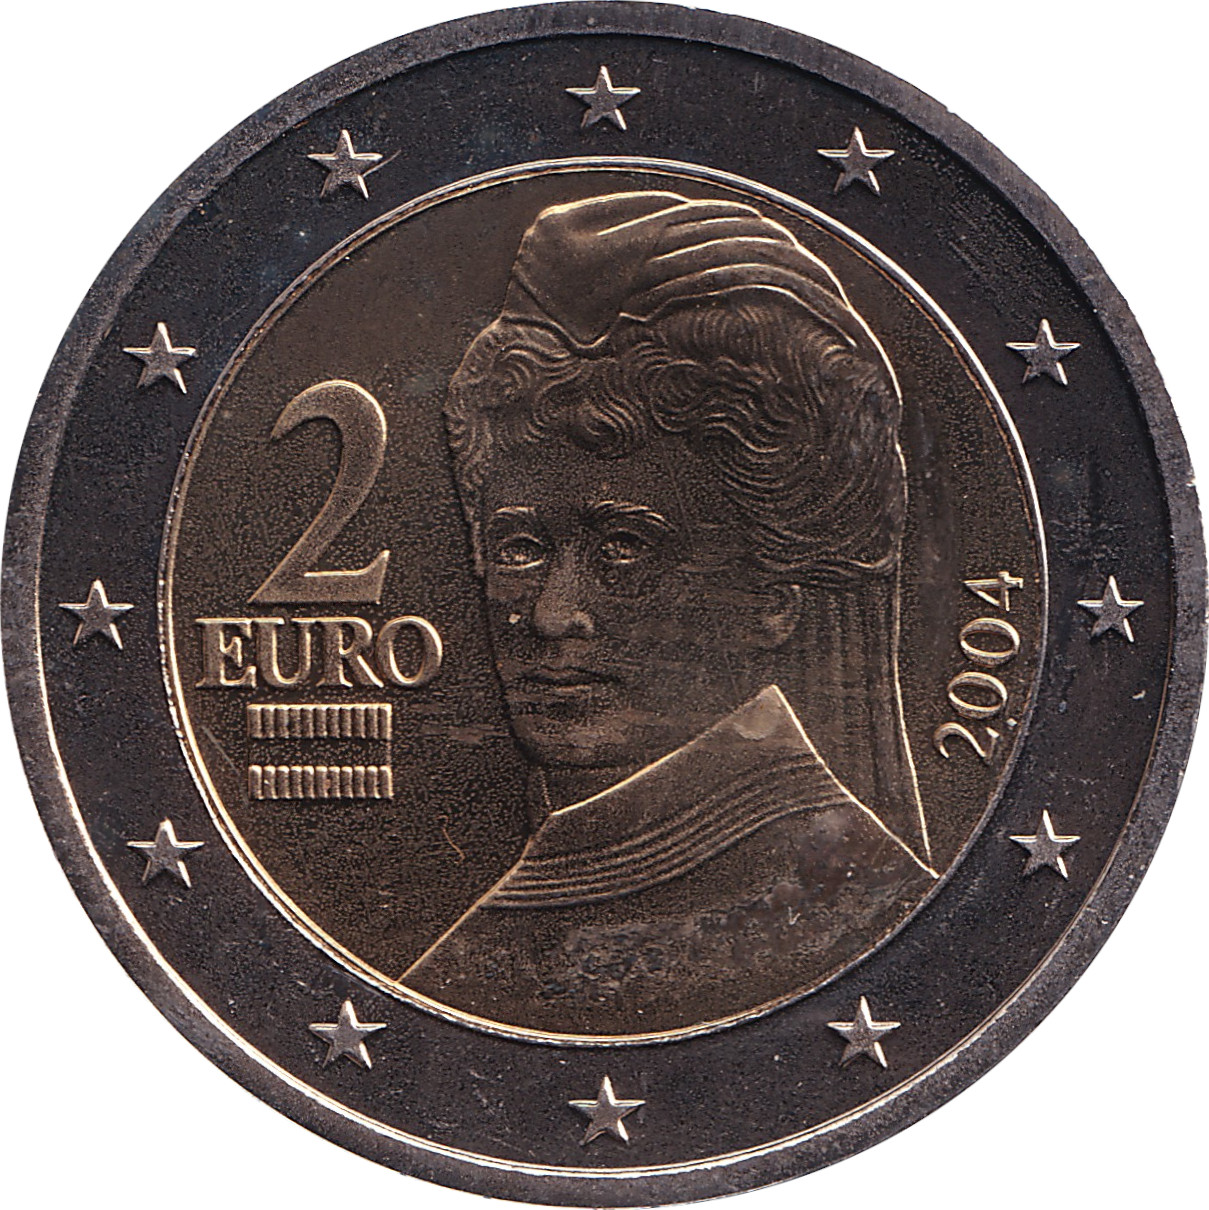 2 euro - Von Suttner